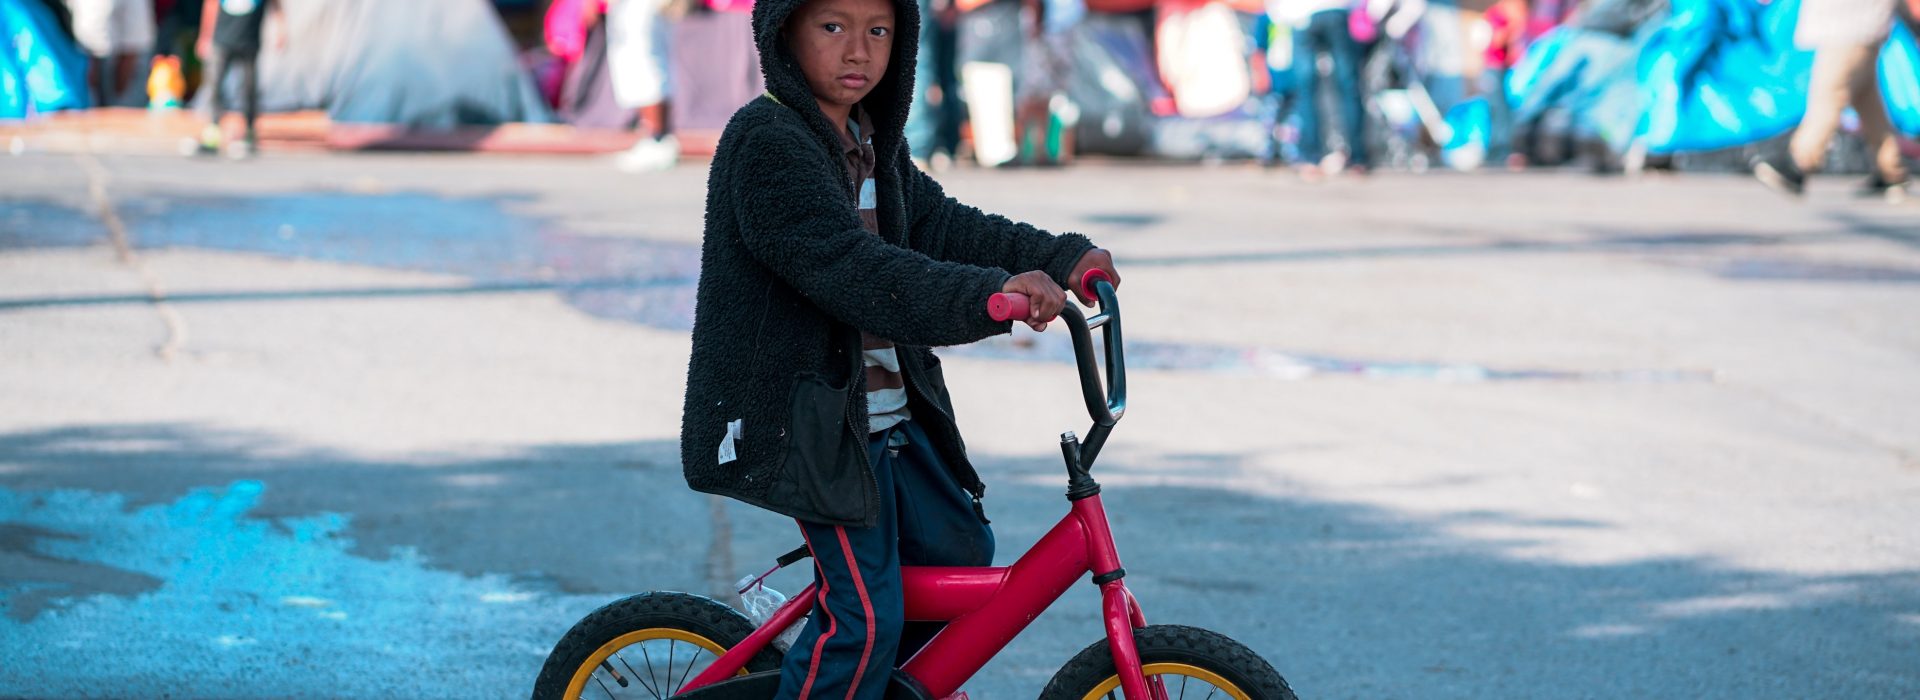 kisgyerek biciklin egy menekülttáborban